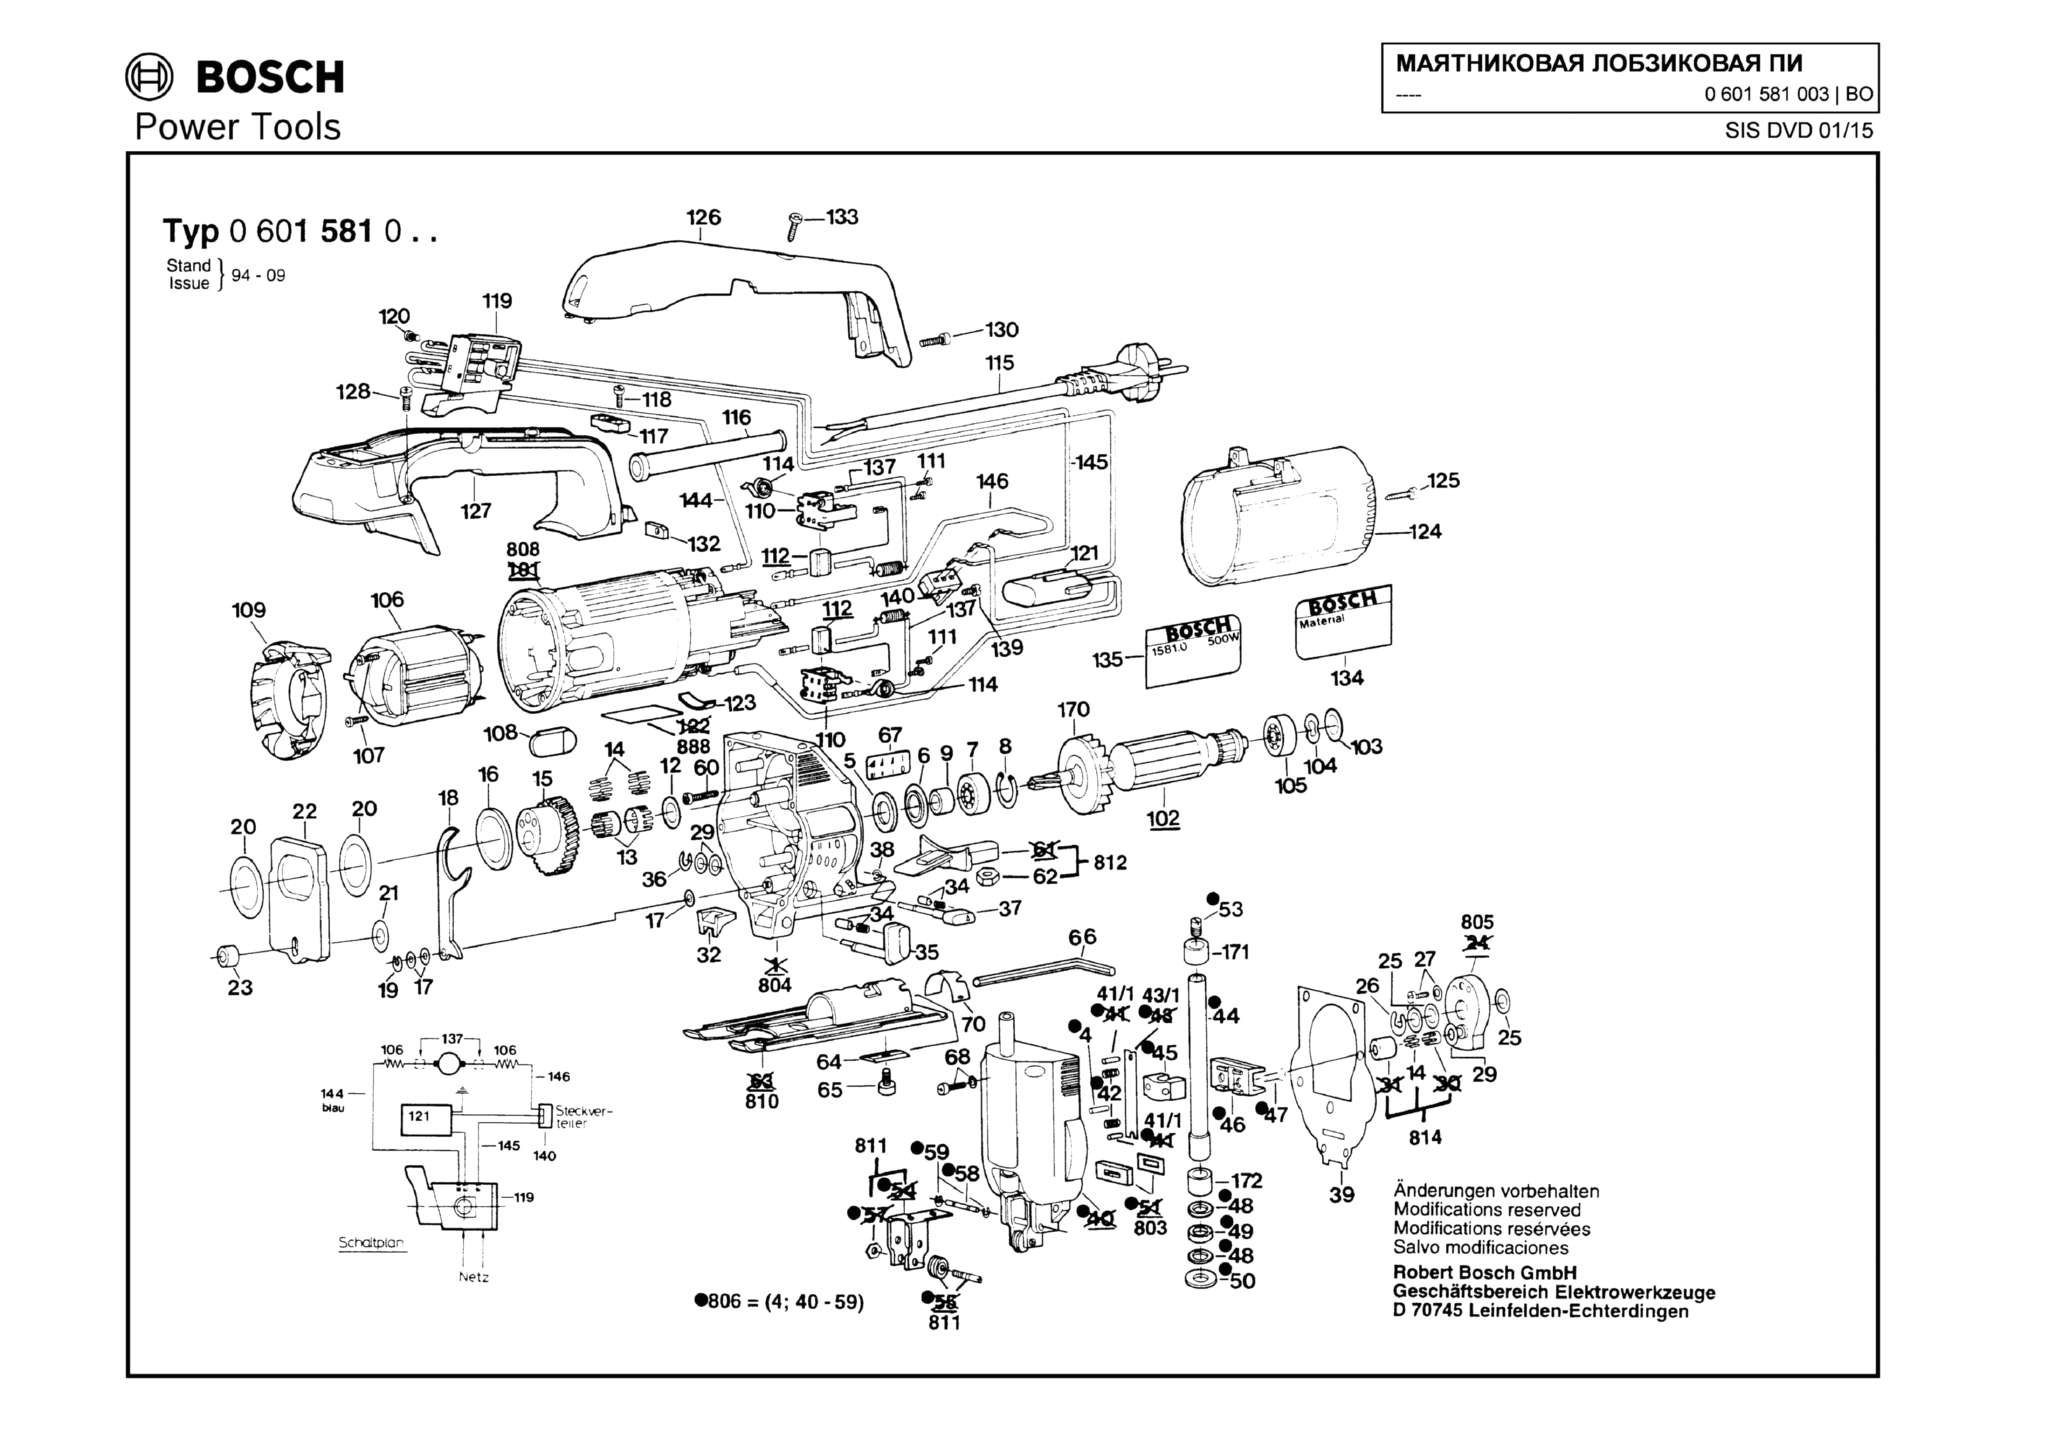 Запчасти, схема и деталировка Bosch (ТИП 0601581003)